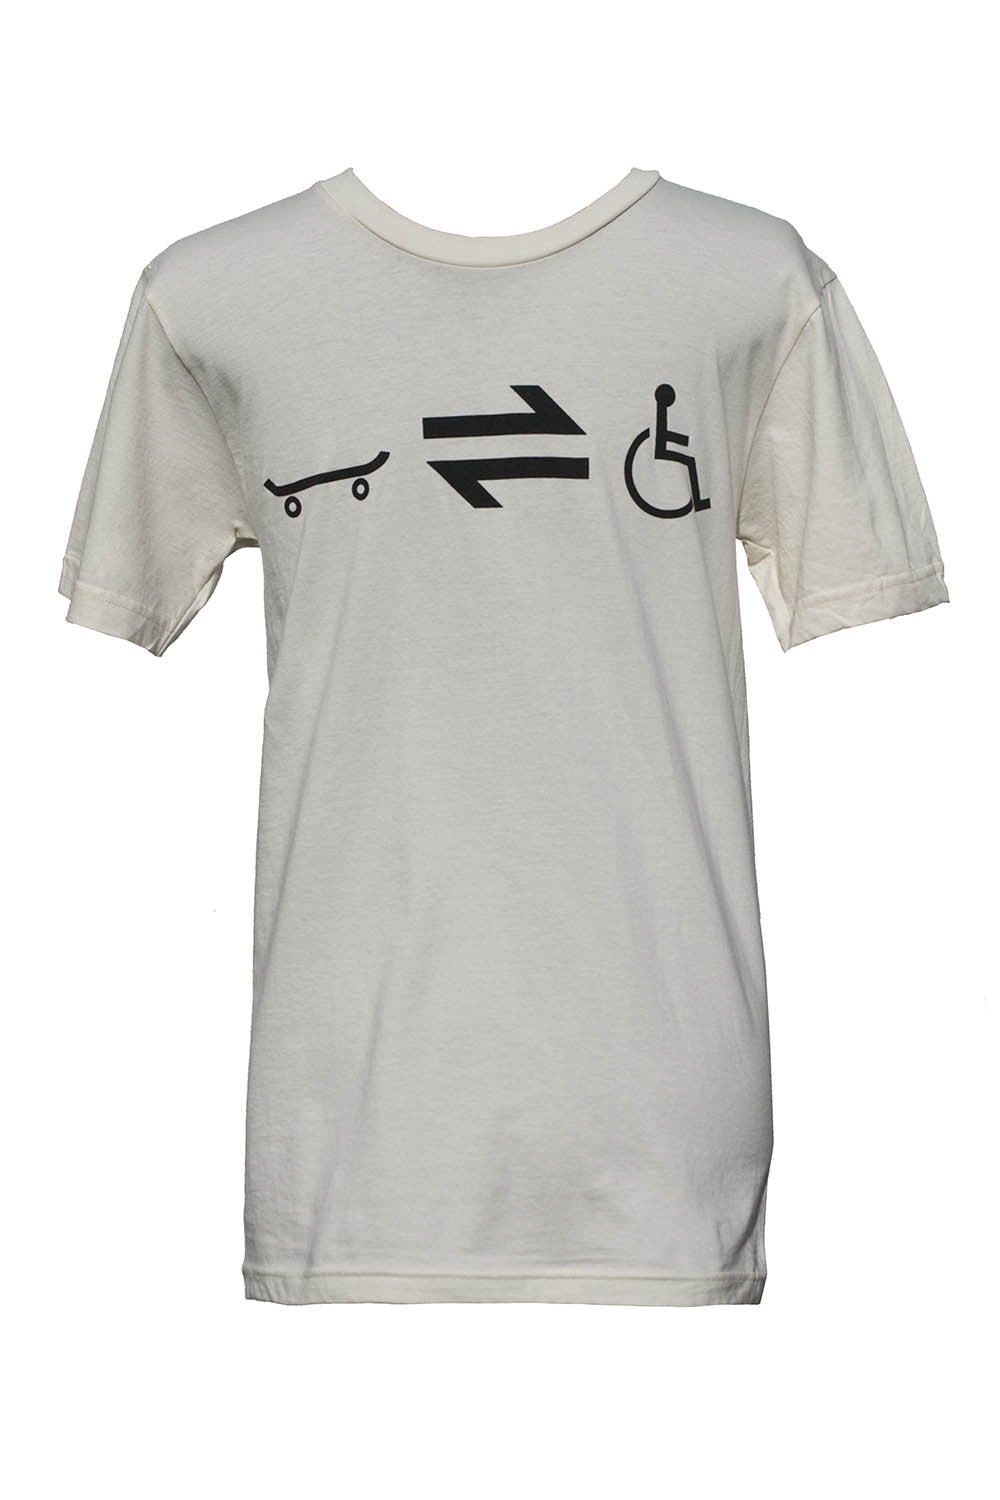 Equillibrium Cripple Equation Organic Cotton T-shirt  (Unisex) - Equillibrium - 2